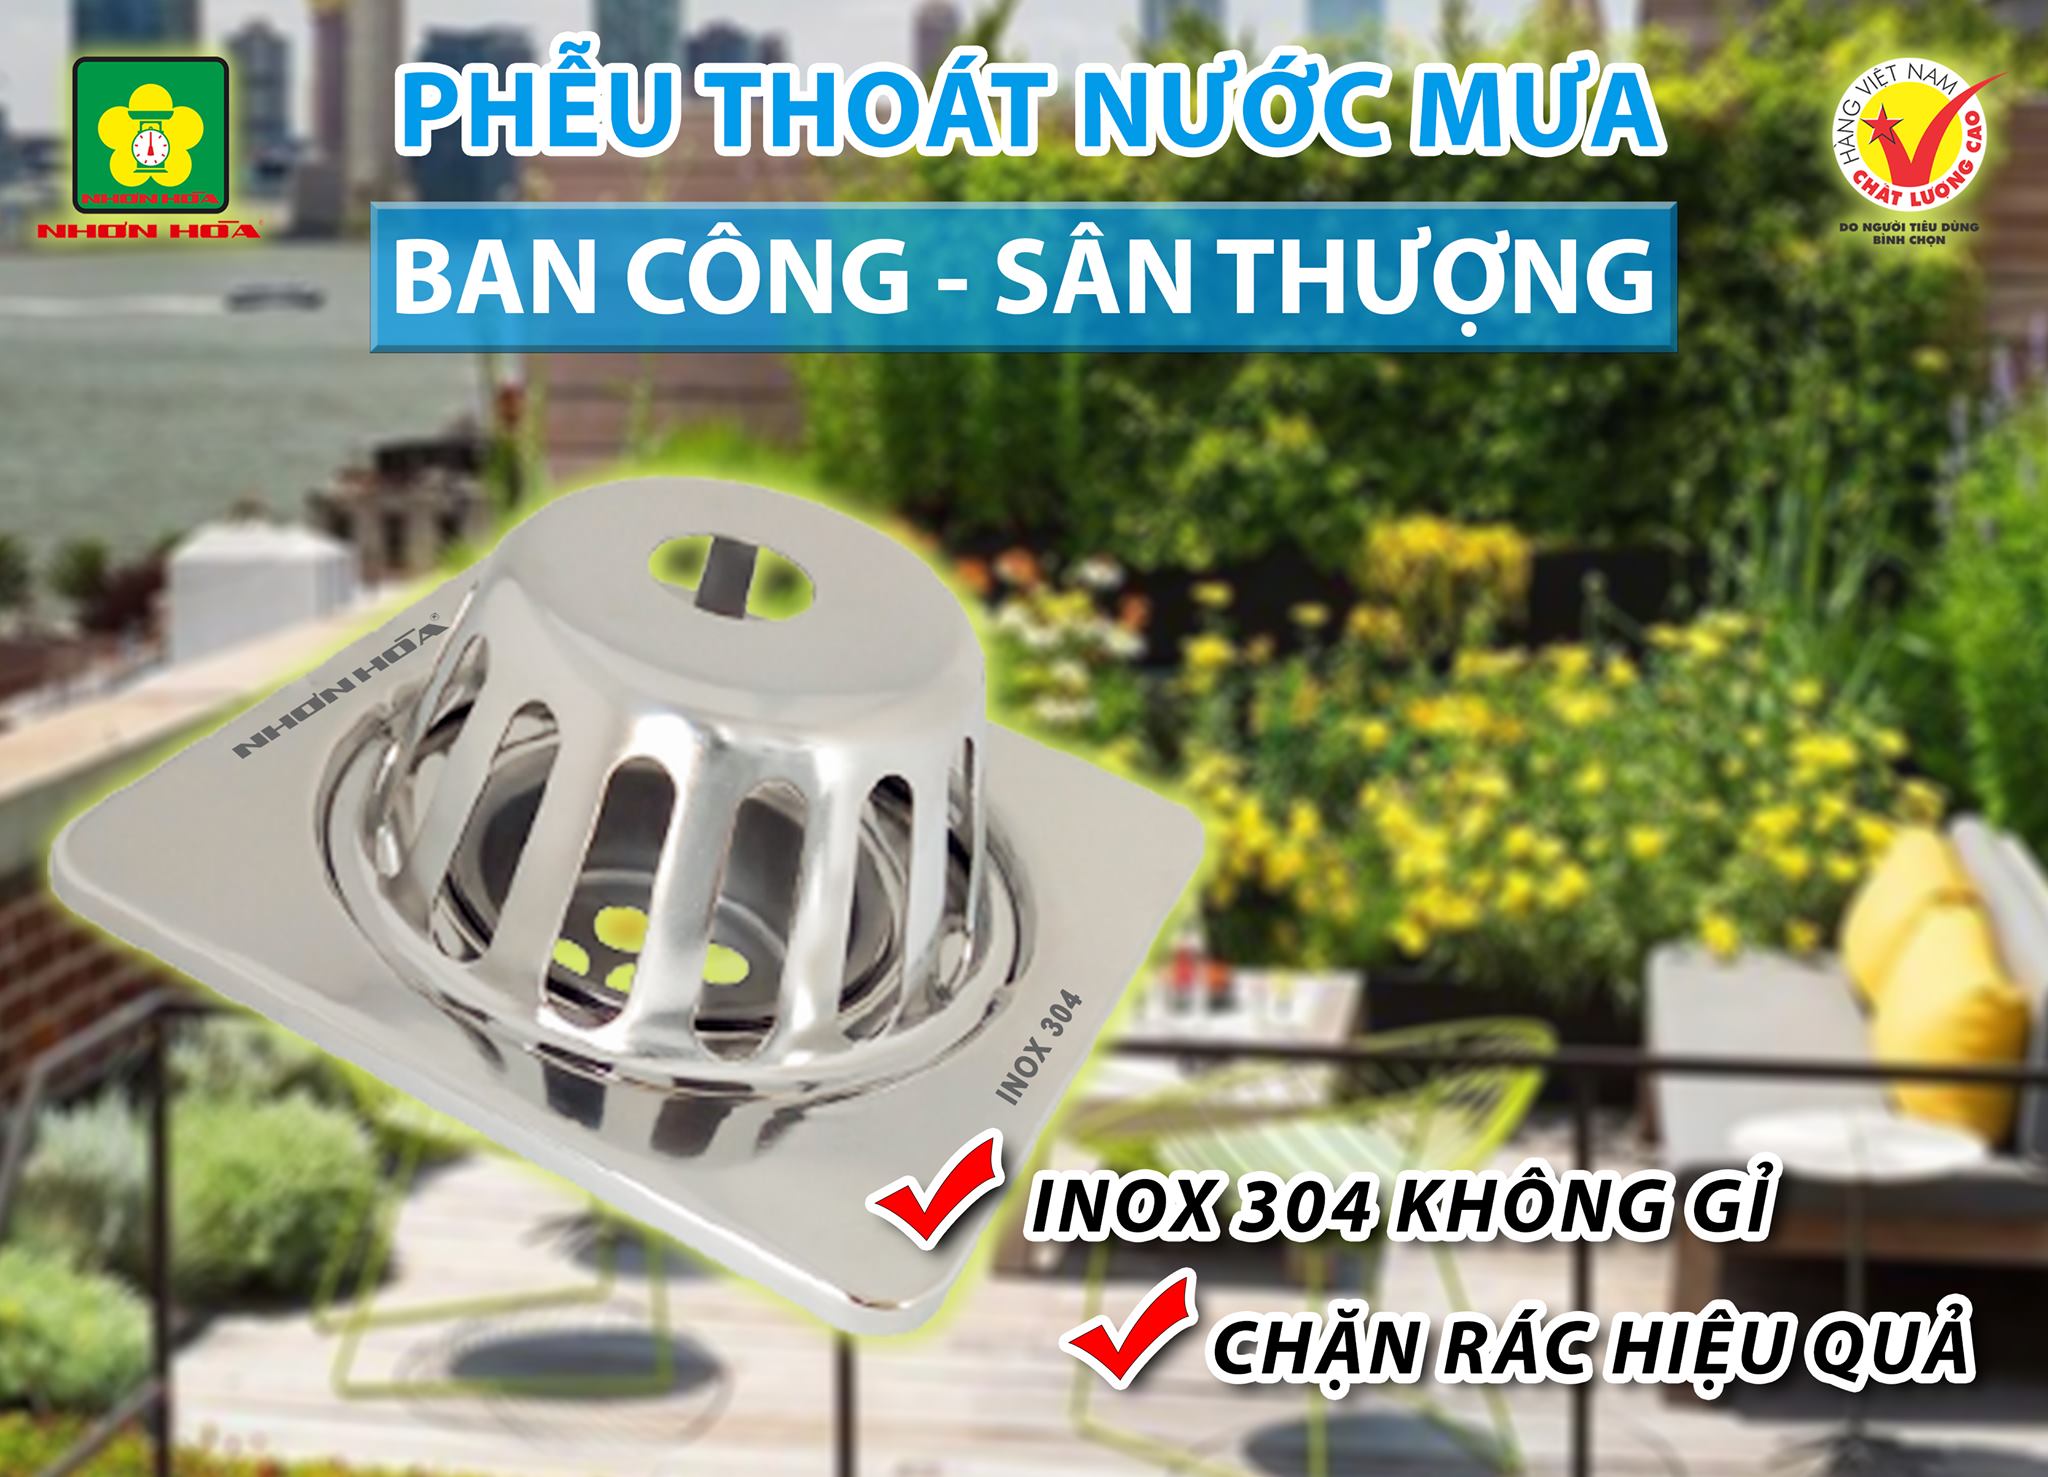 pheu-thoat-nuoc-mua-ban-cong-san-thuong-nhon-hoa